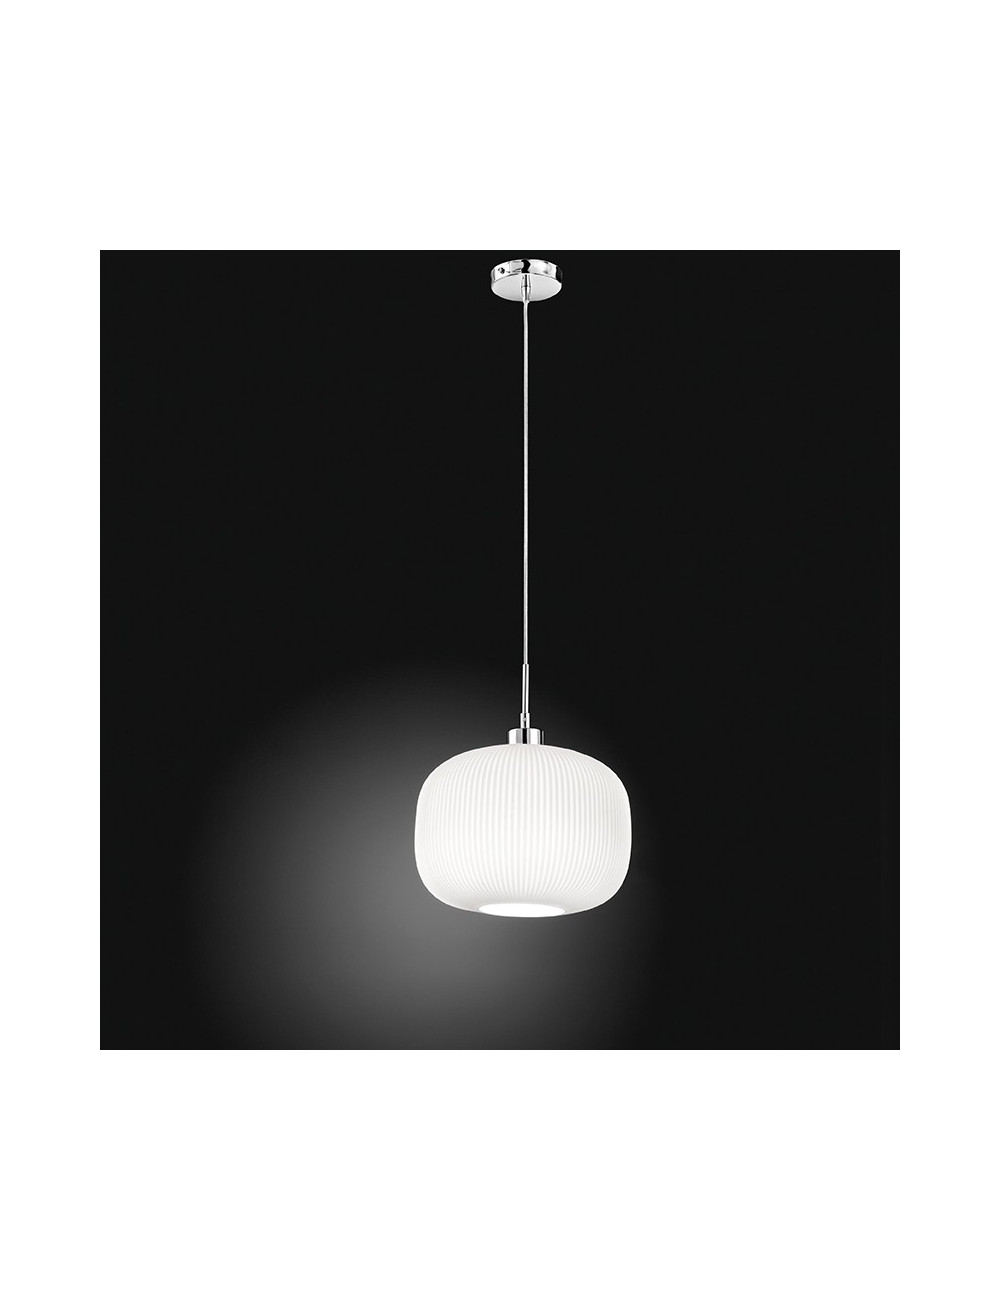 SWEET 6342 Perenz lighting | pendant Lamp, Modern Glass White Ribbed